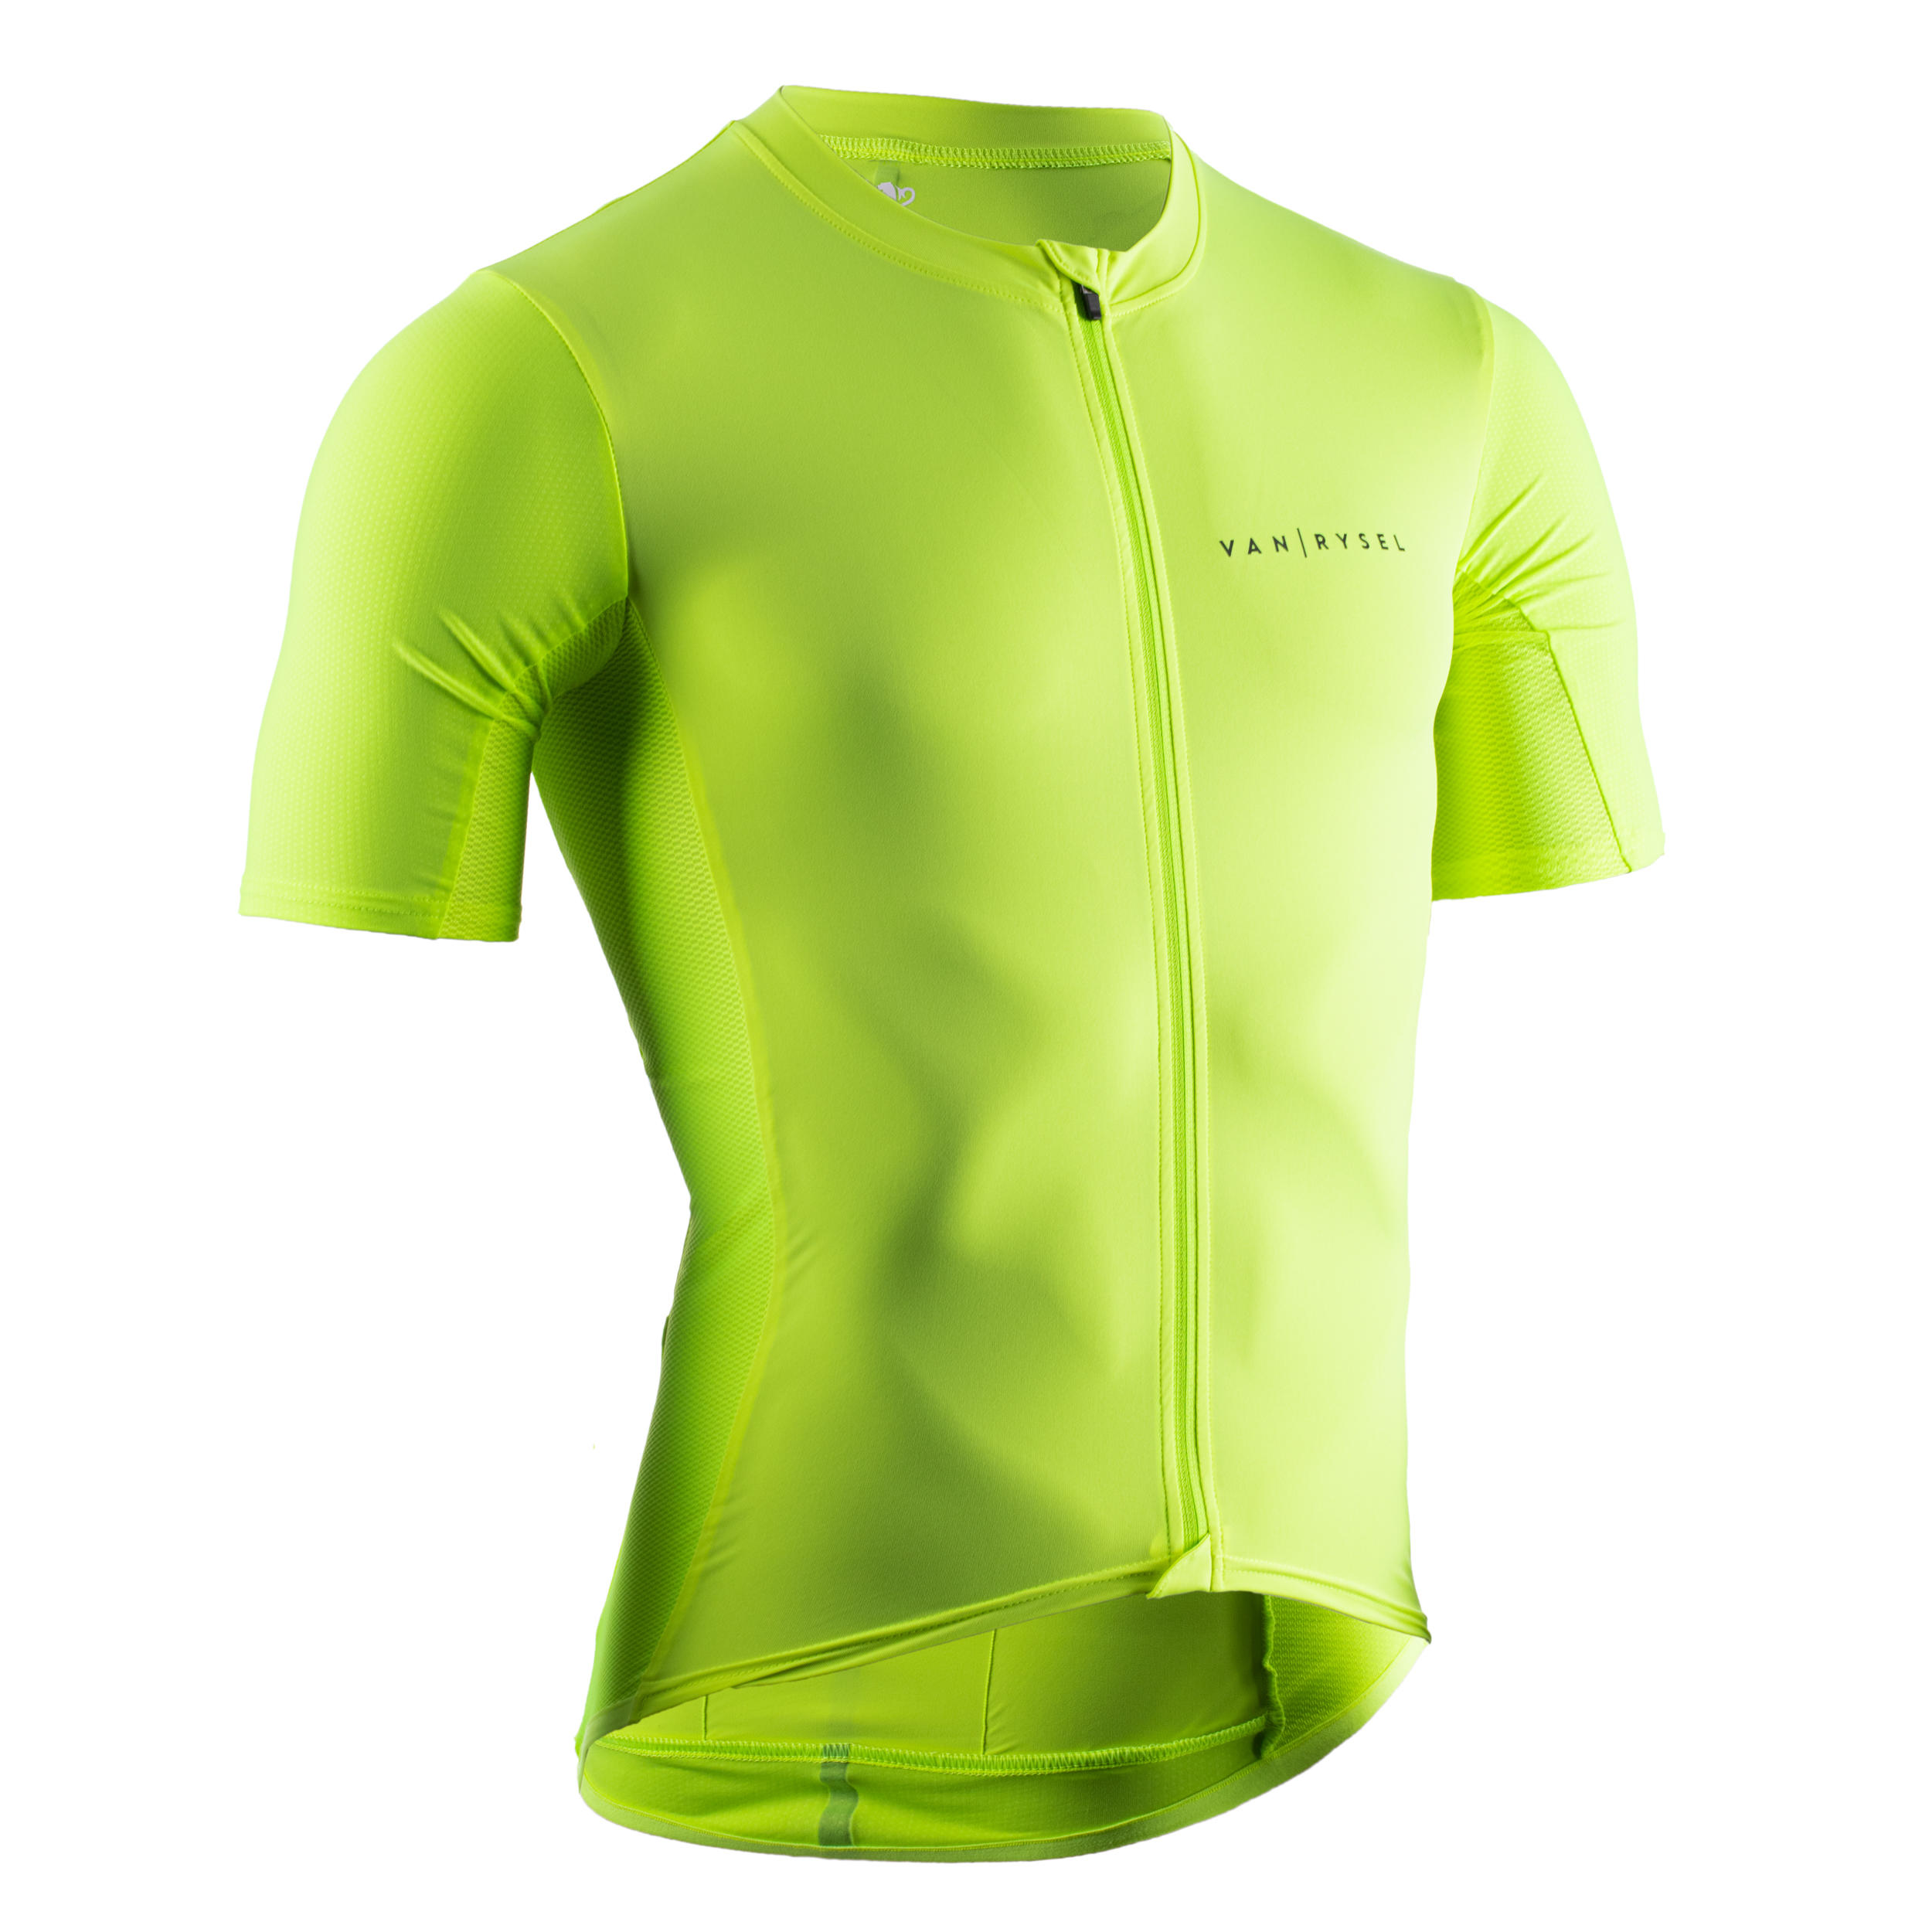 Hivexagon Maglietta a Compressione Maniche Corte Uomo T-Shirt Traspirante Asciugatura Rapida a Baselayer per Corsa Palestra SM100 Ciclismo 